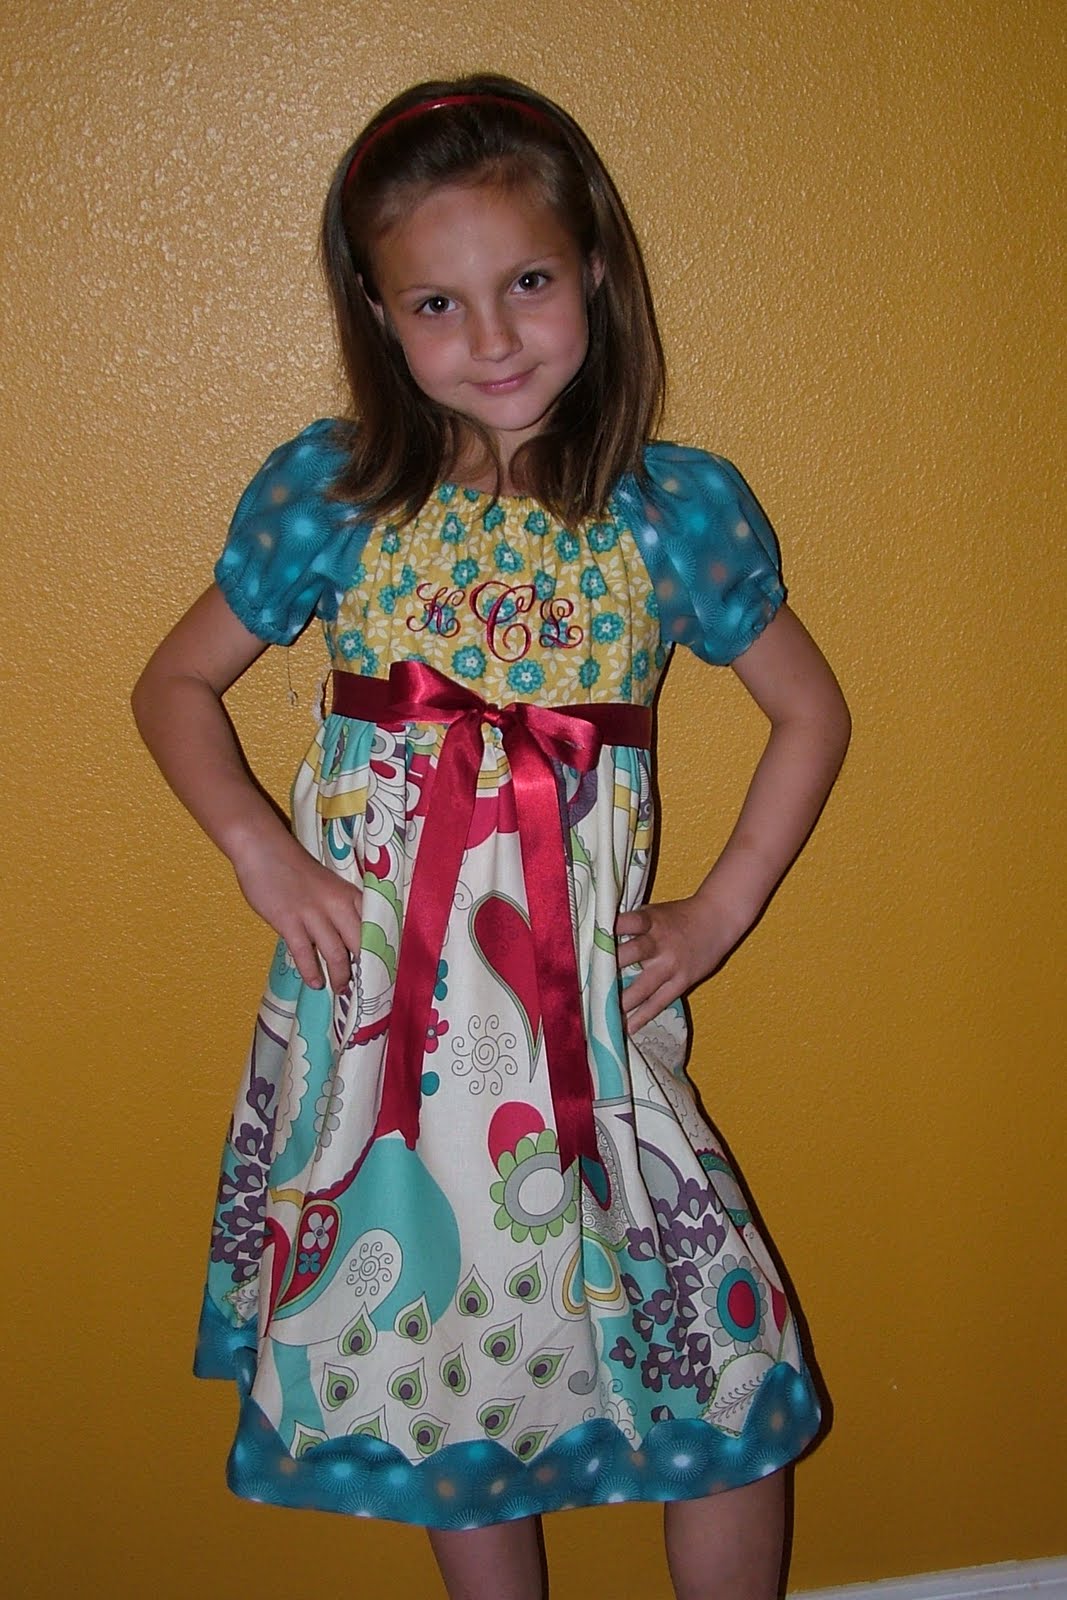 An Easter Dress for Kristen.